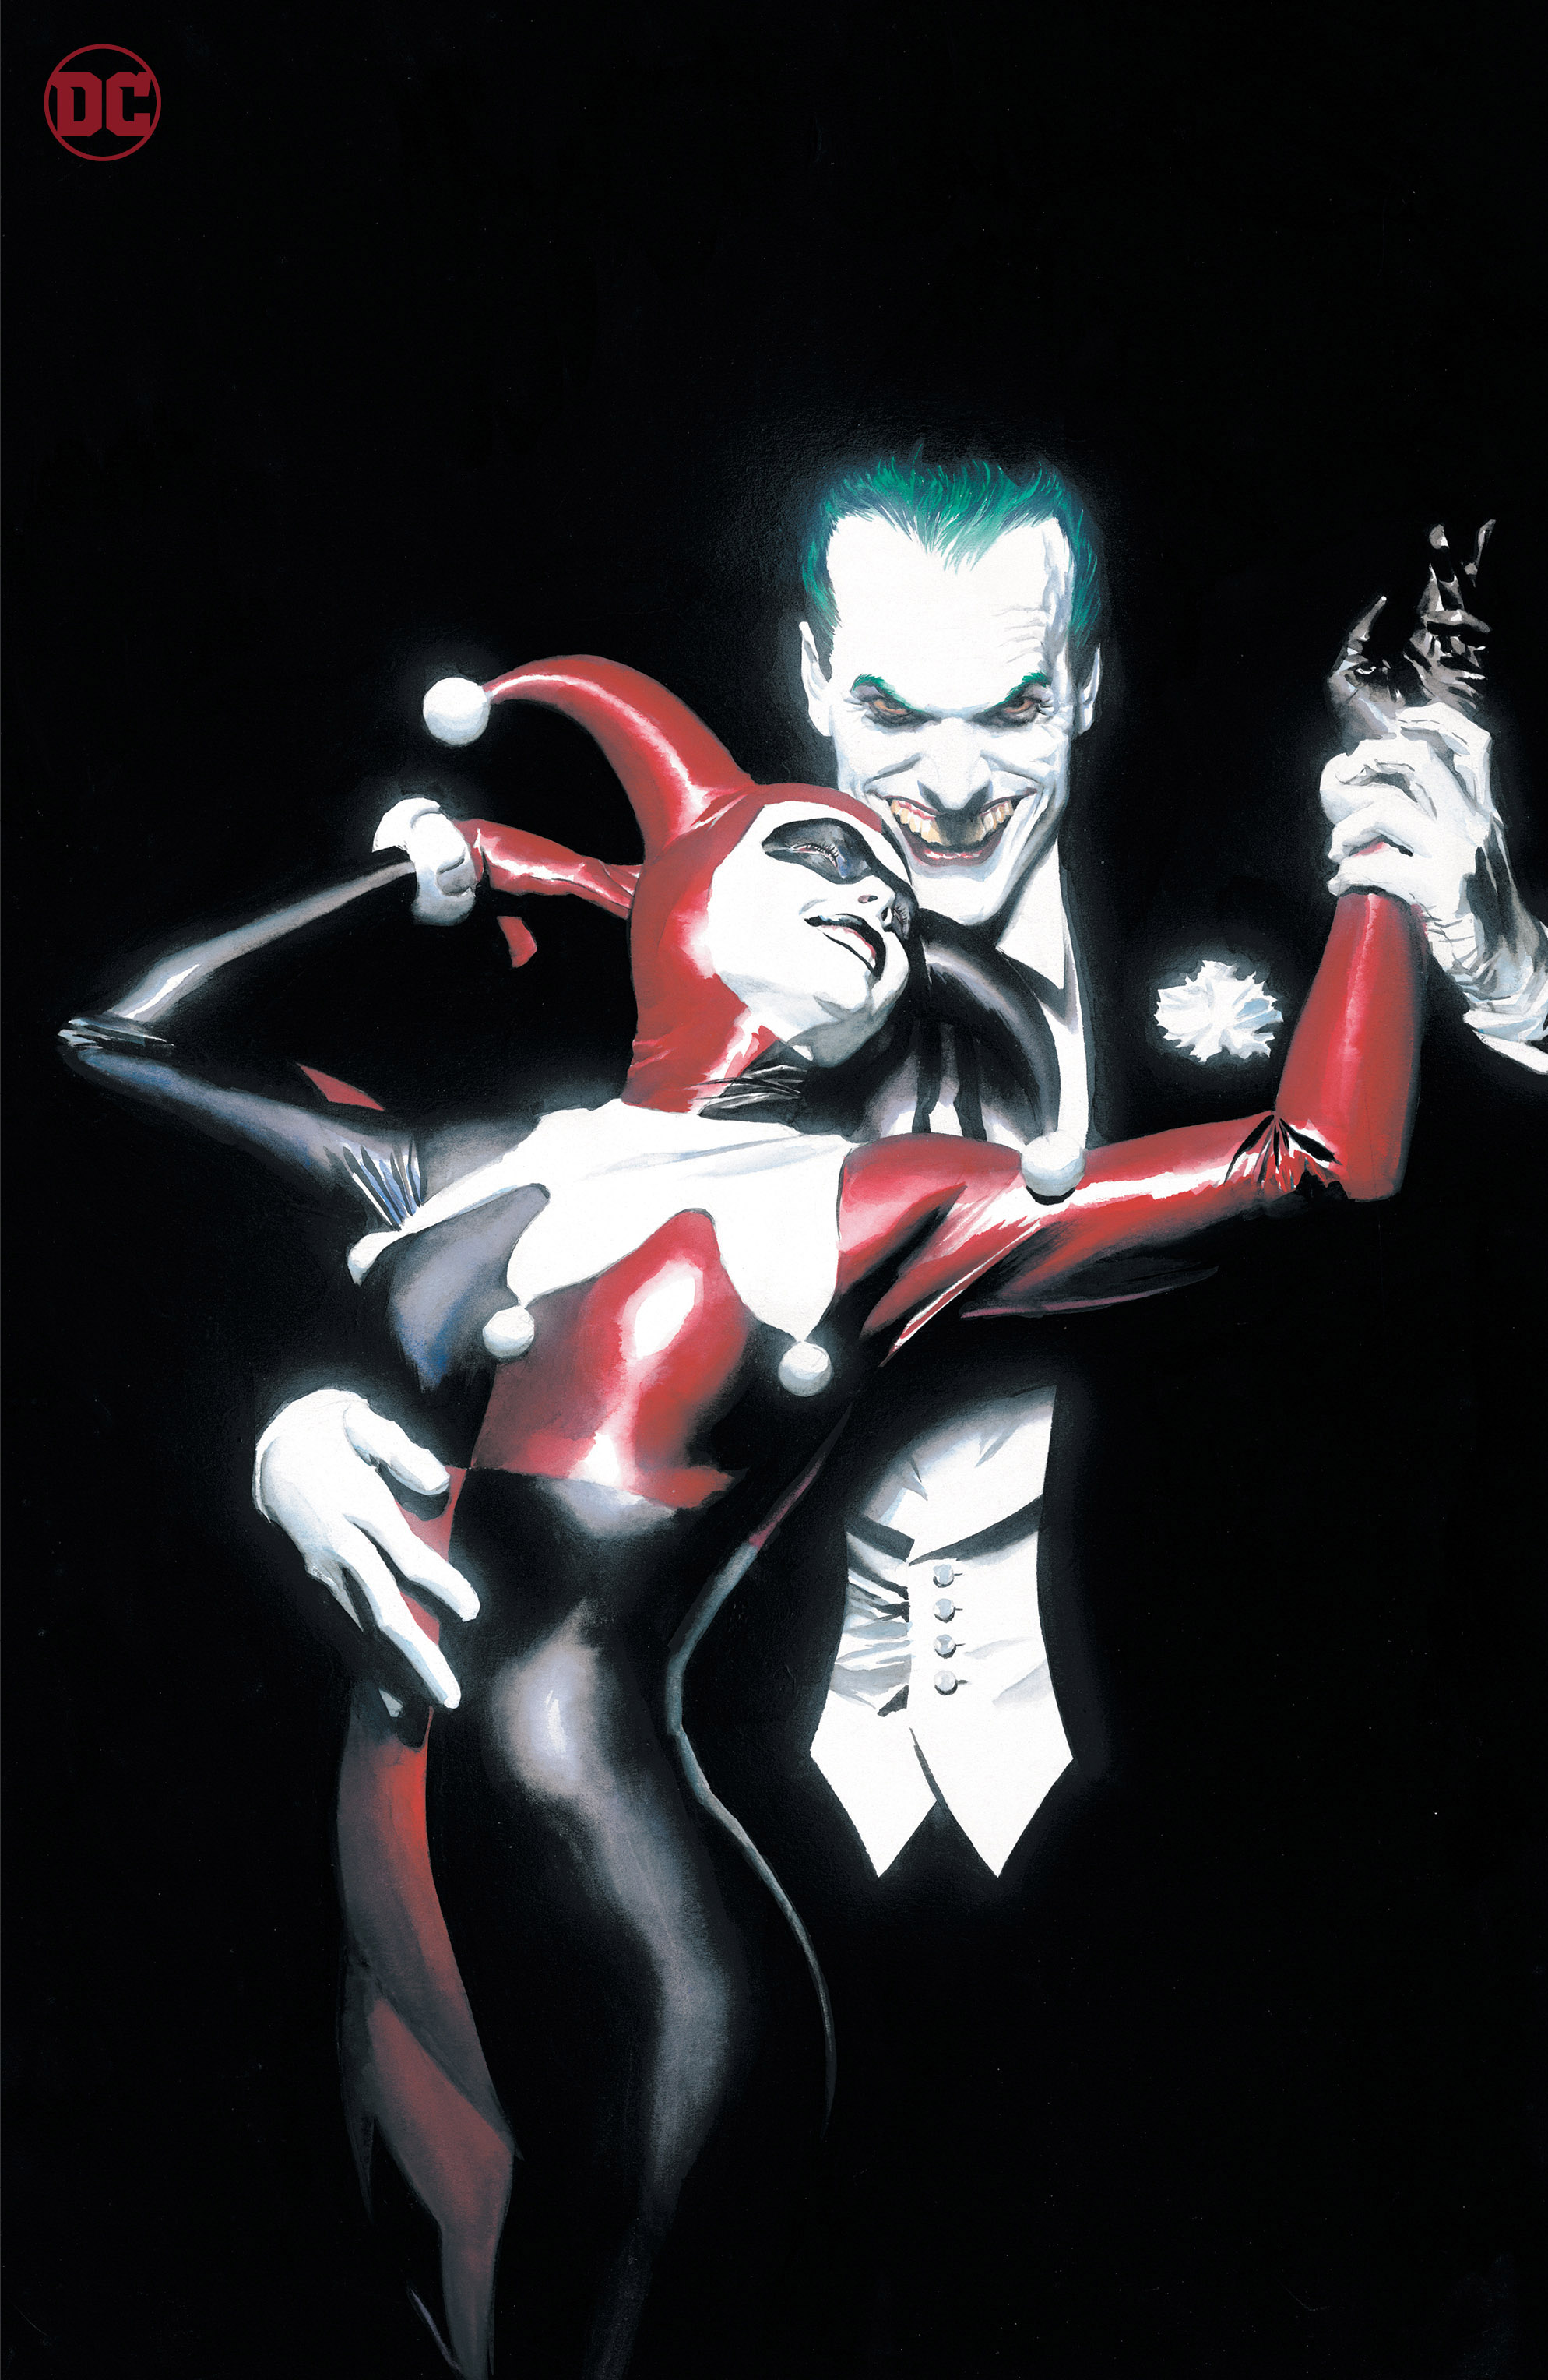 Joker Harley Quinn Uncovered #1 (One Shot) Cover D Alex Ross Foil Variant